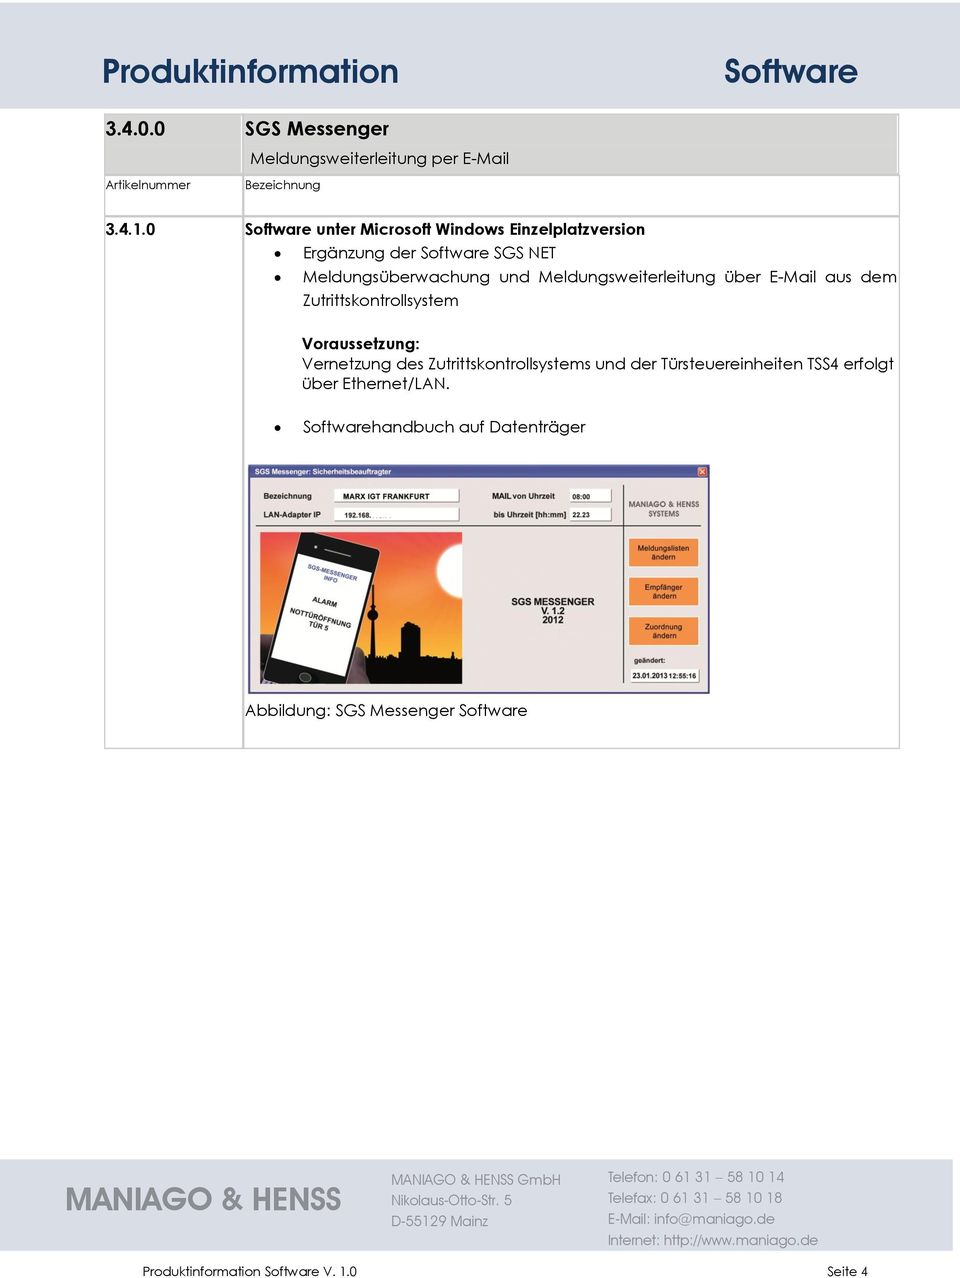 Meldungsweiterleitung über E-Mail aus dem Zutrittskontrollsystem Voraussetzung: Vernetzung des